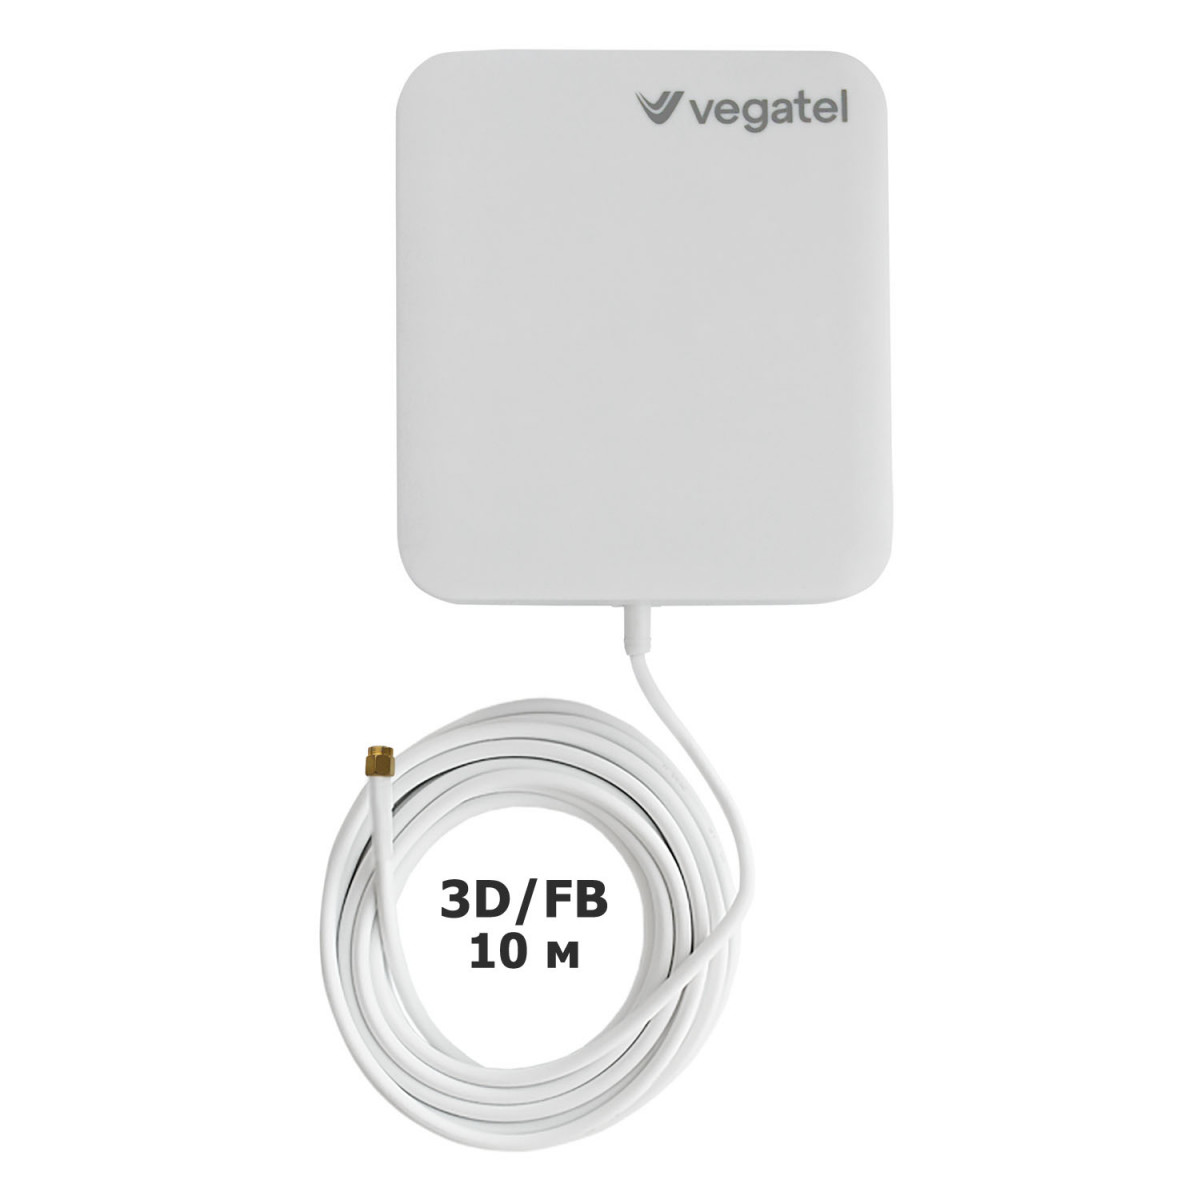 Детальное изображение товара "Комплект усиления сотовой связи Vegatel PL-2100" из каталога оборудования Антенна76